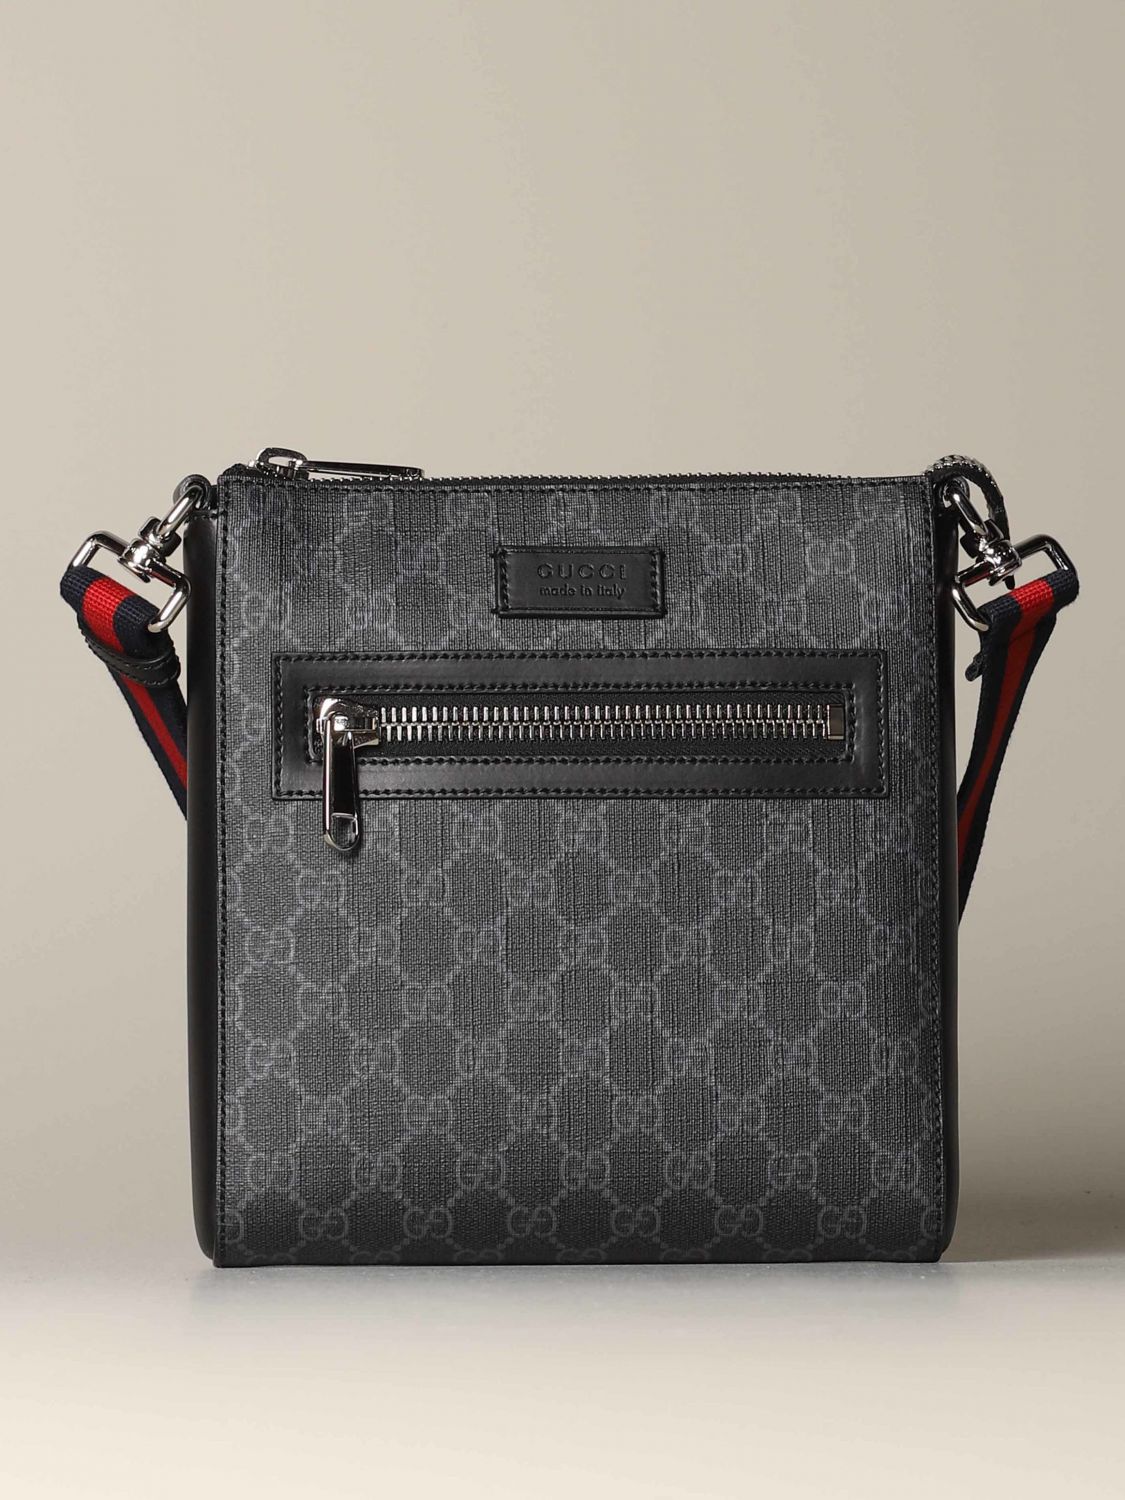 GG Supreme Shoulder Bag in Black - Gucci